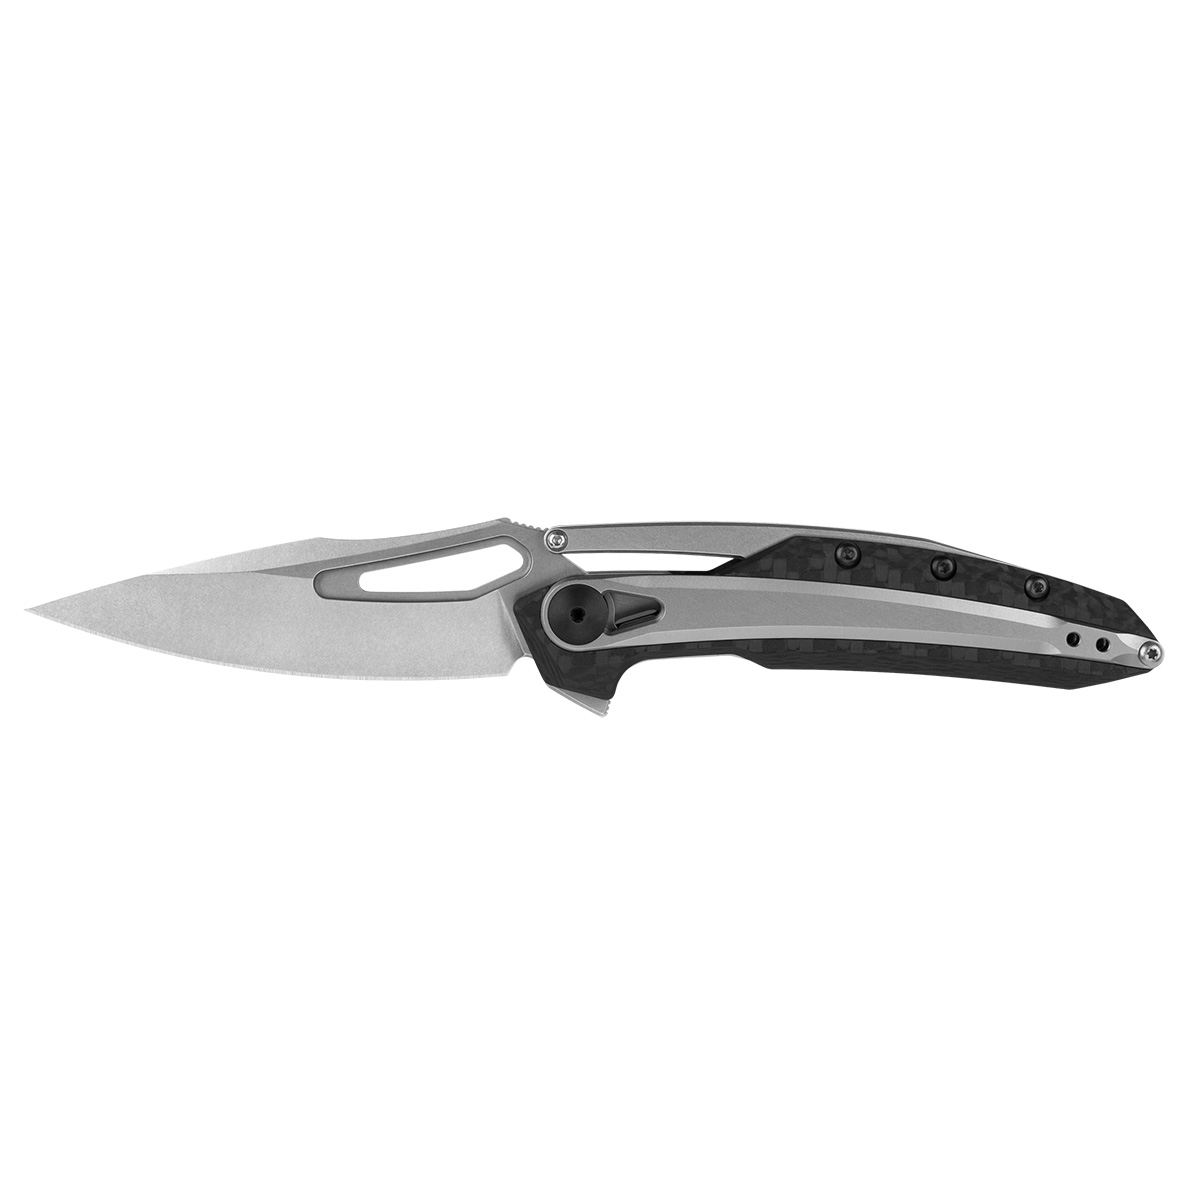 Складной нож Zero Tolerance 0990, сталь CPM-20CV, рукоять carbon fiber складной нож we knife esprit marble carbon cpm 20cv